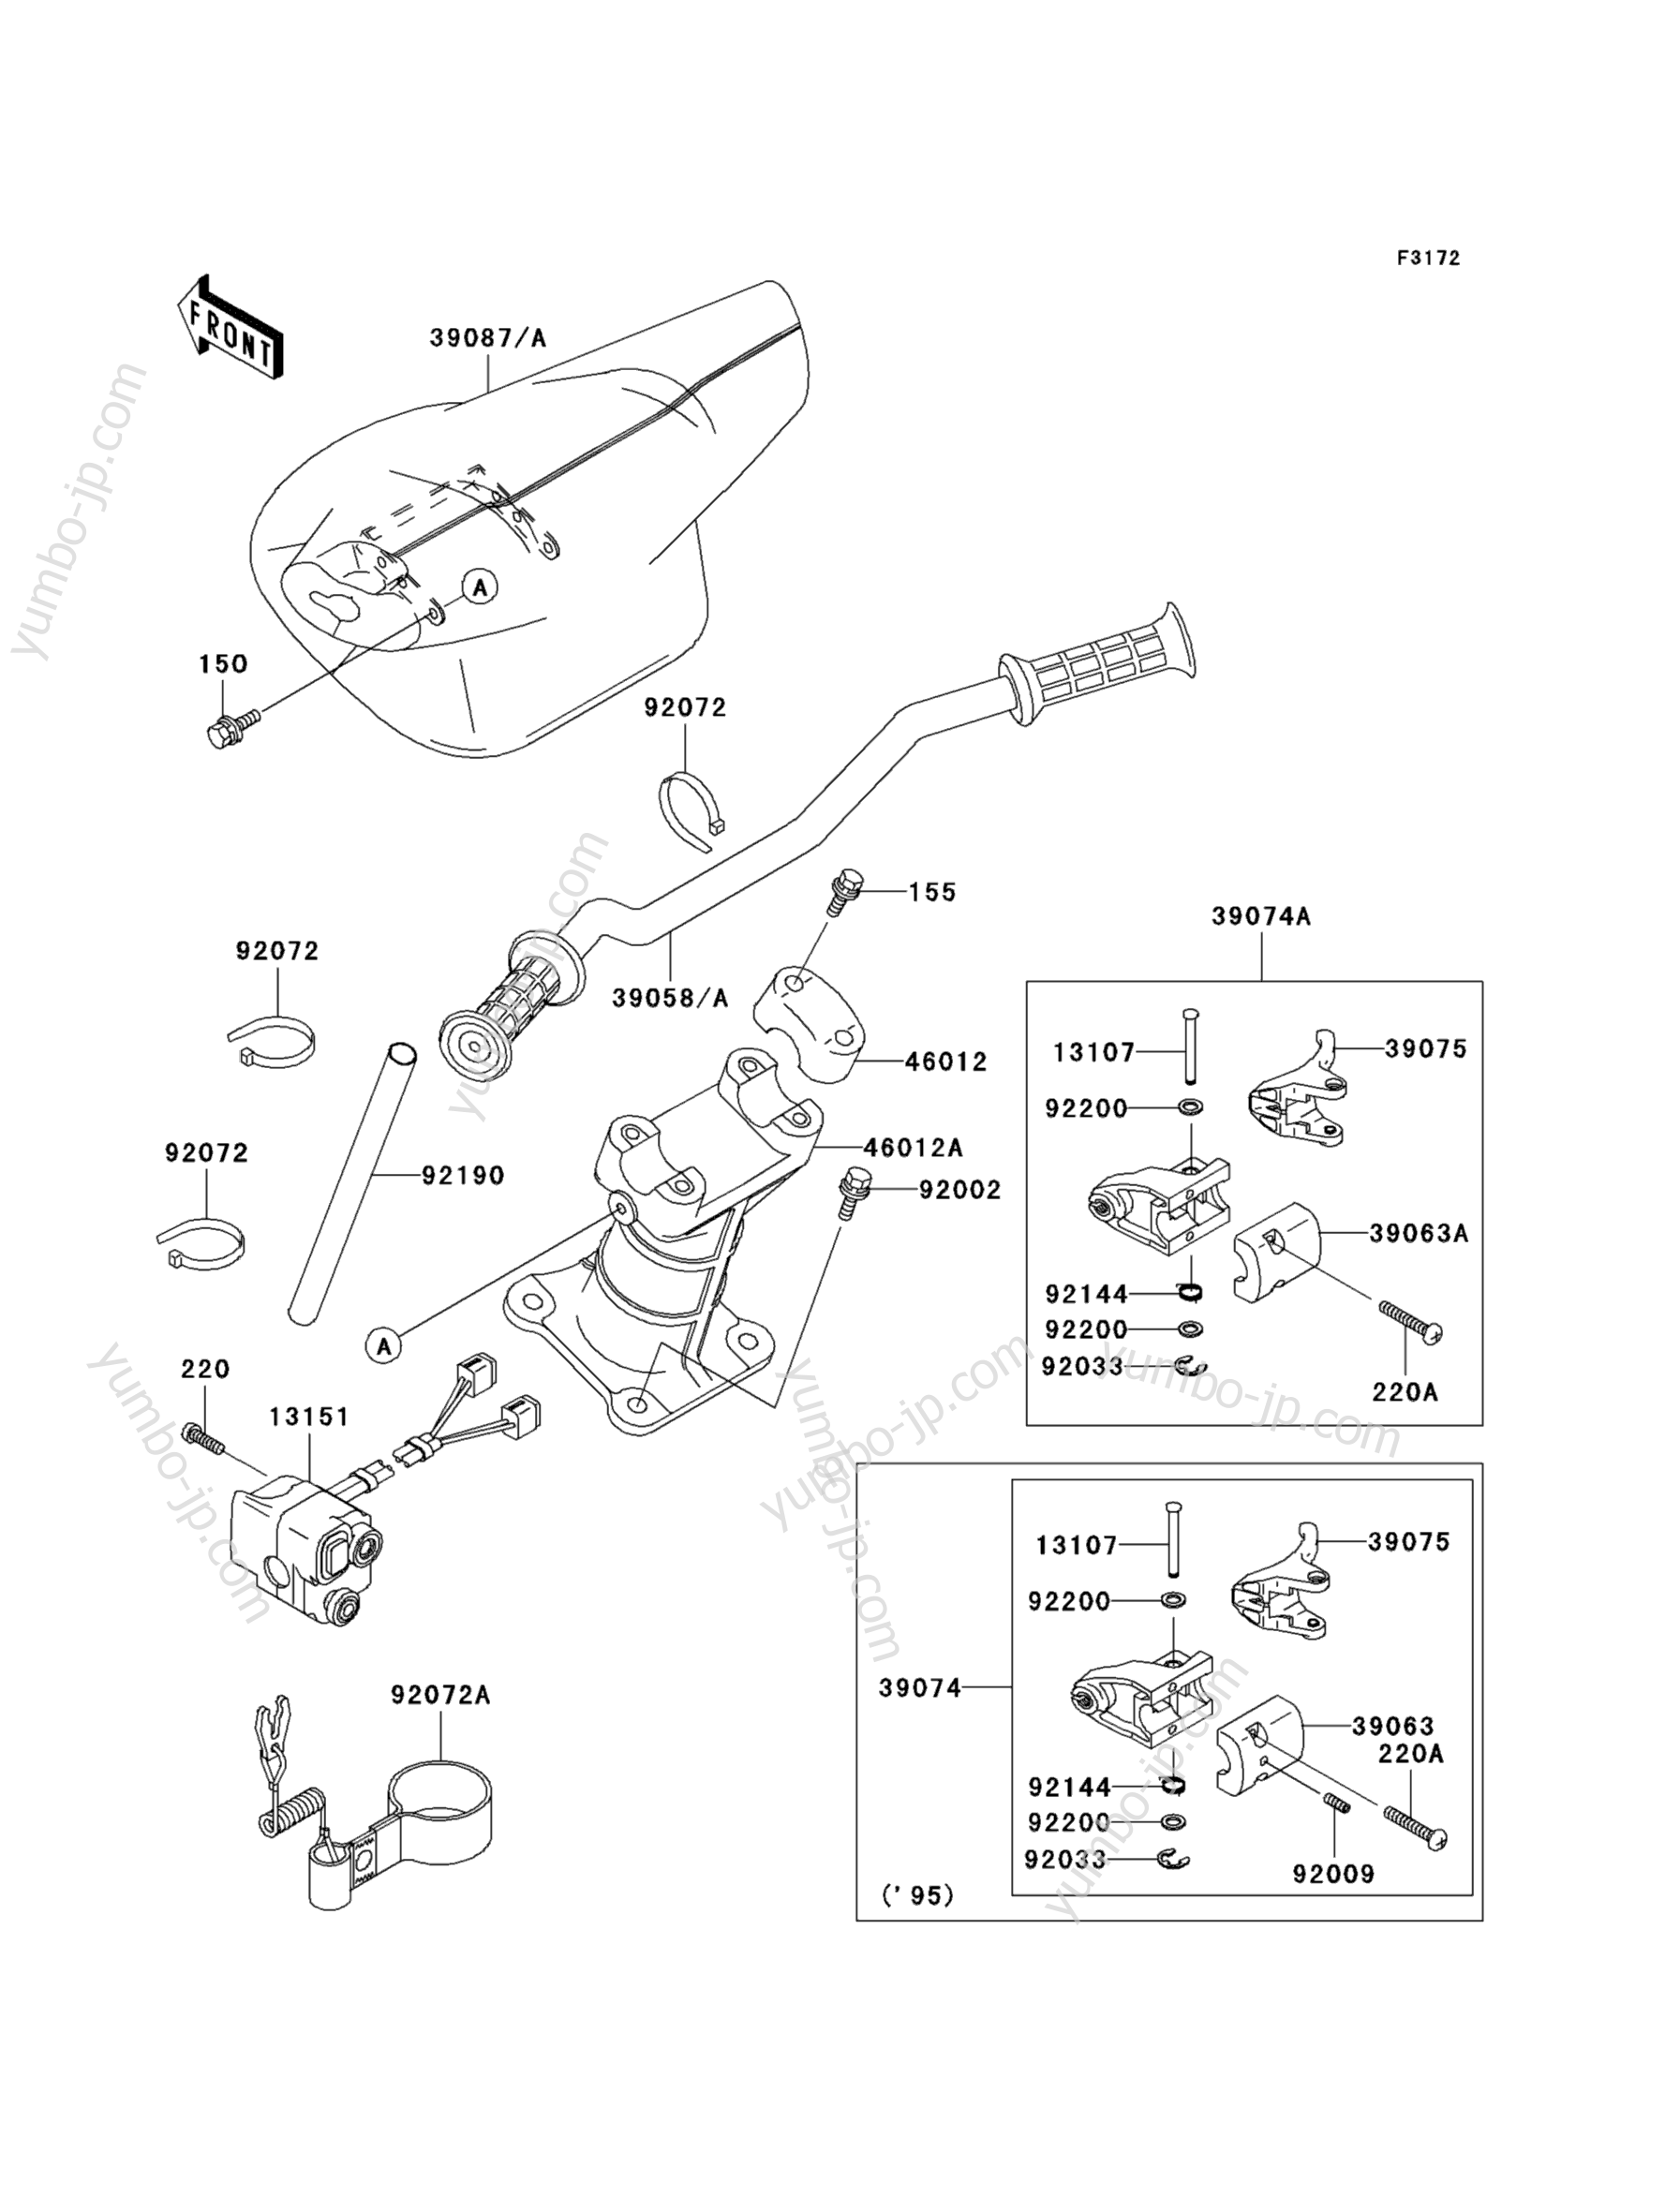 Румпель (рукоятка управления) для гидроциклов KAWASAKI JET SKI STS (JT750-B2) 1996 г.